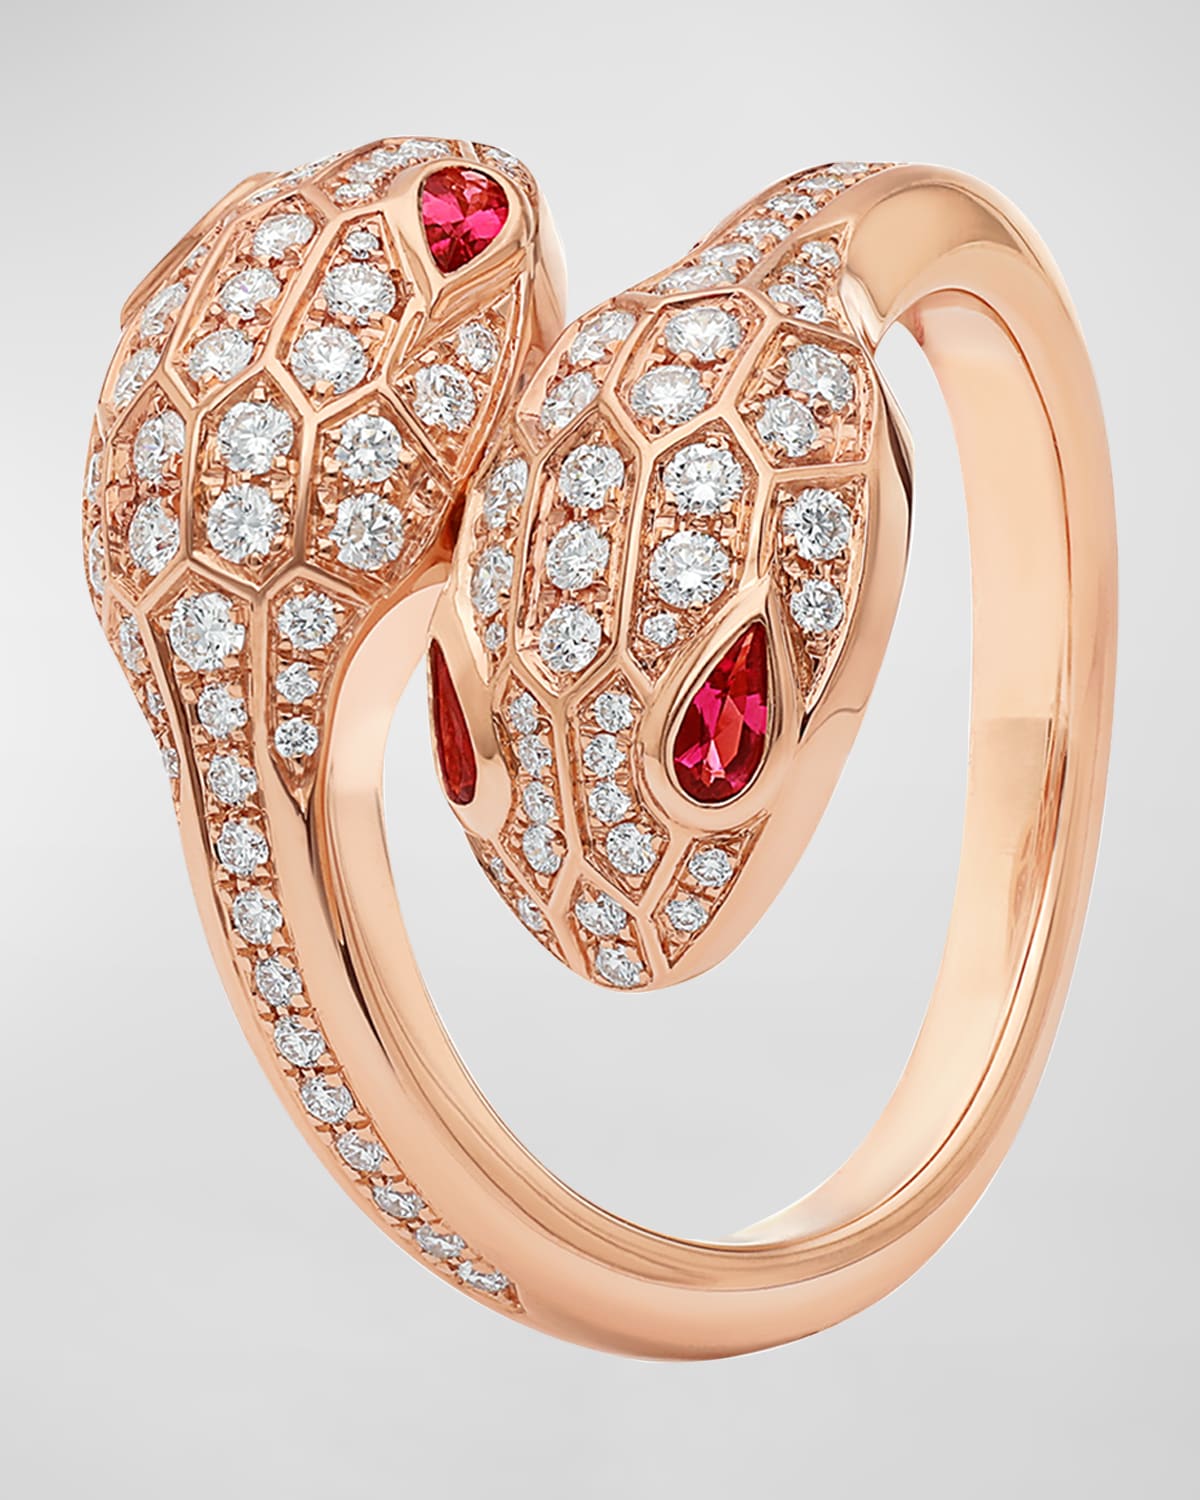 Serpenti Seduttori Ring with Rubellite and Diamonds, Size 50